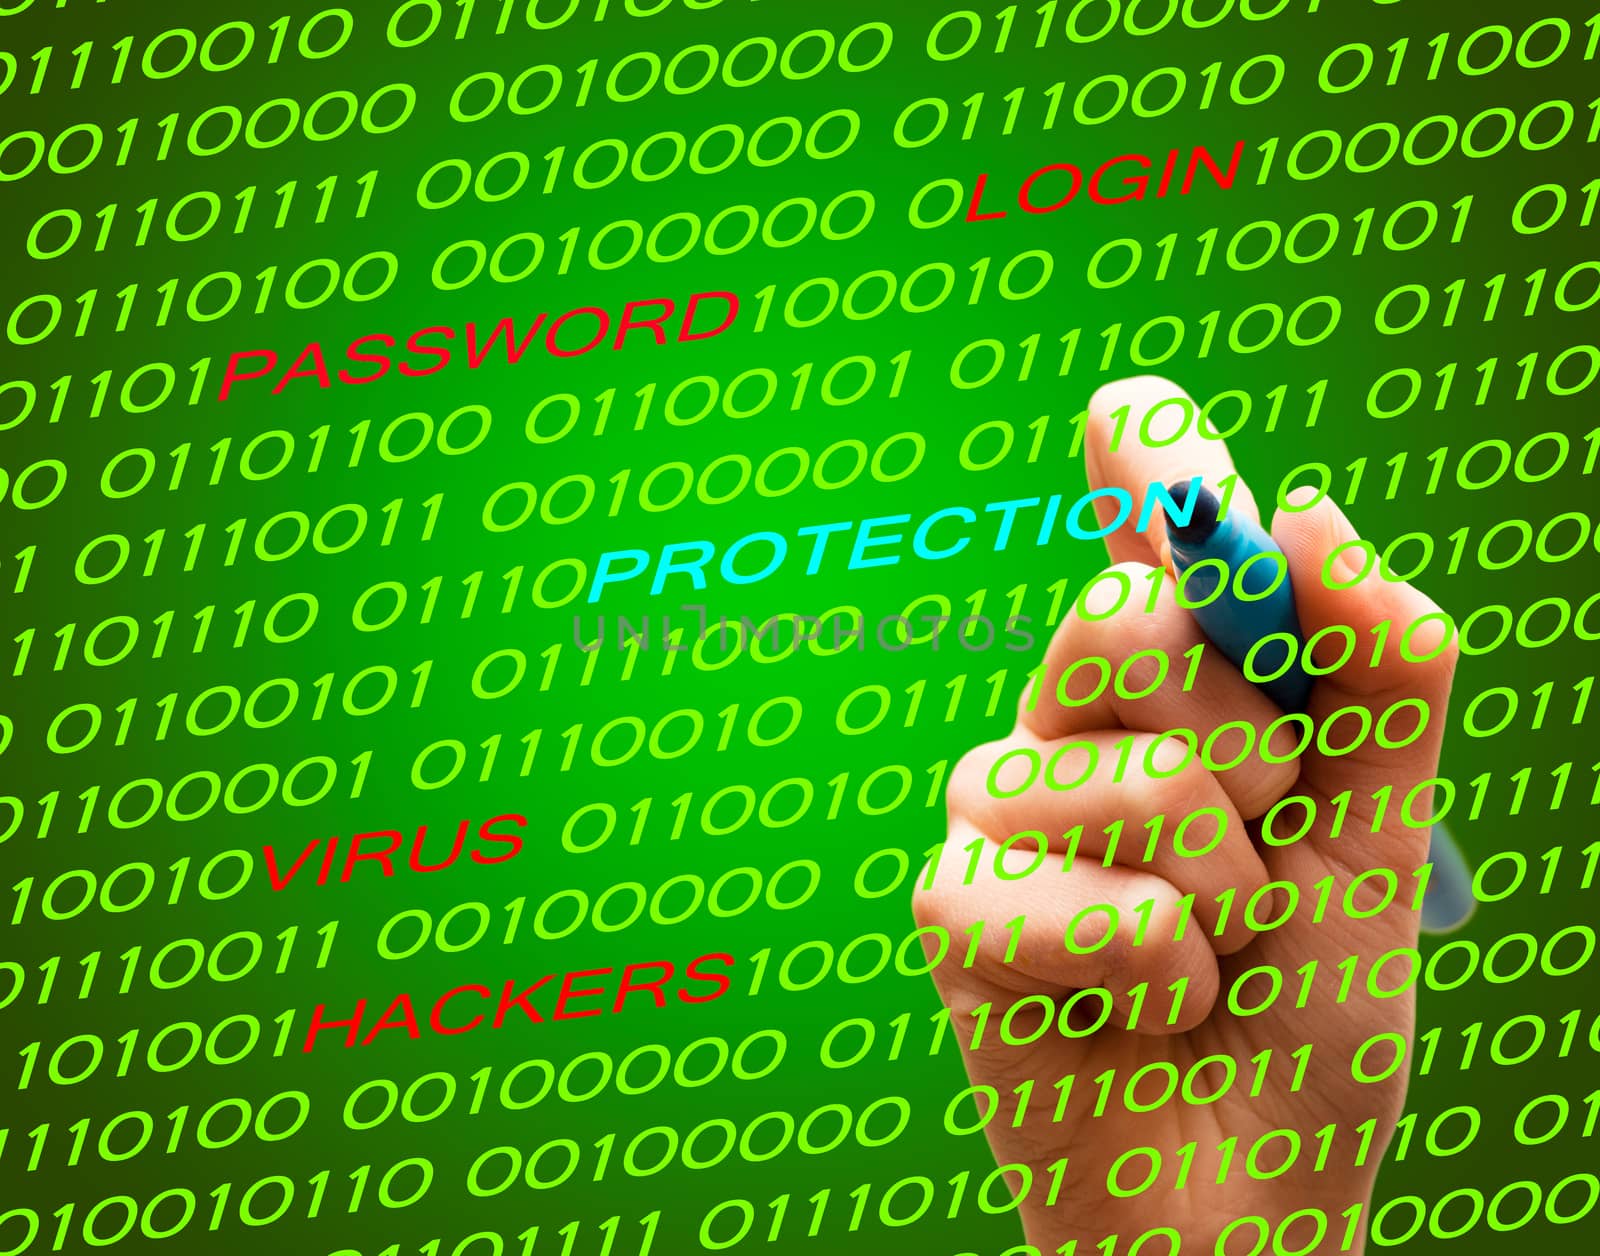 Alert password login virus hackers hand binary text